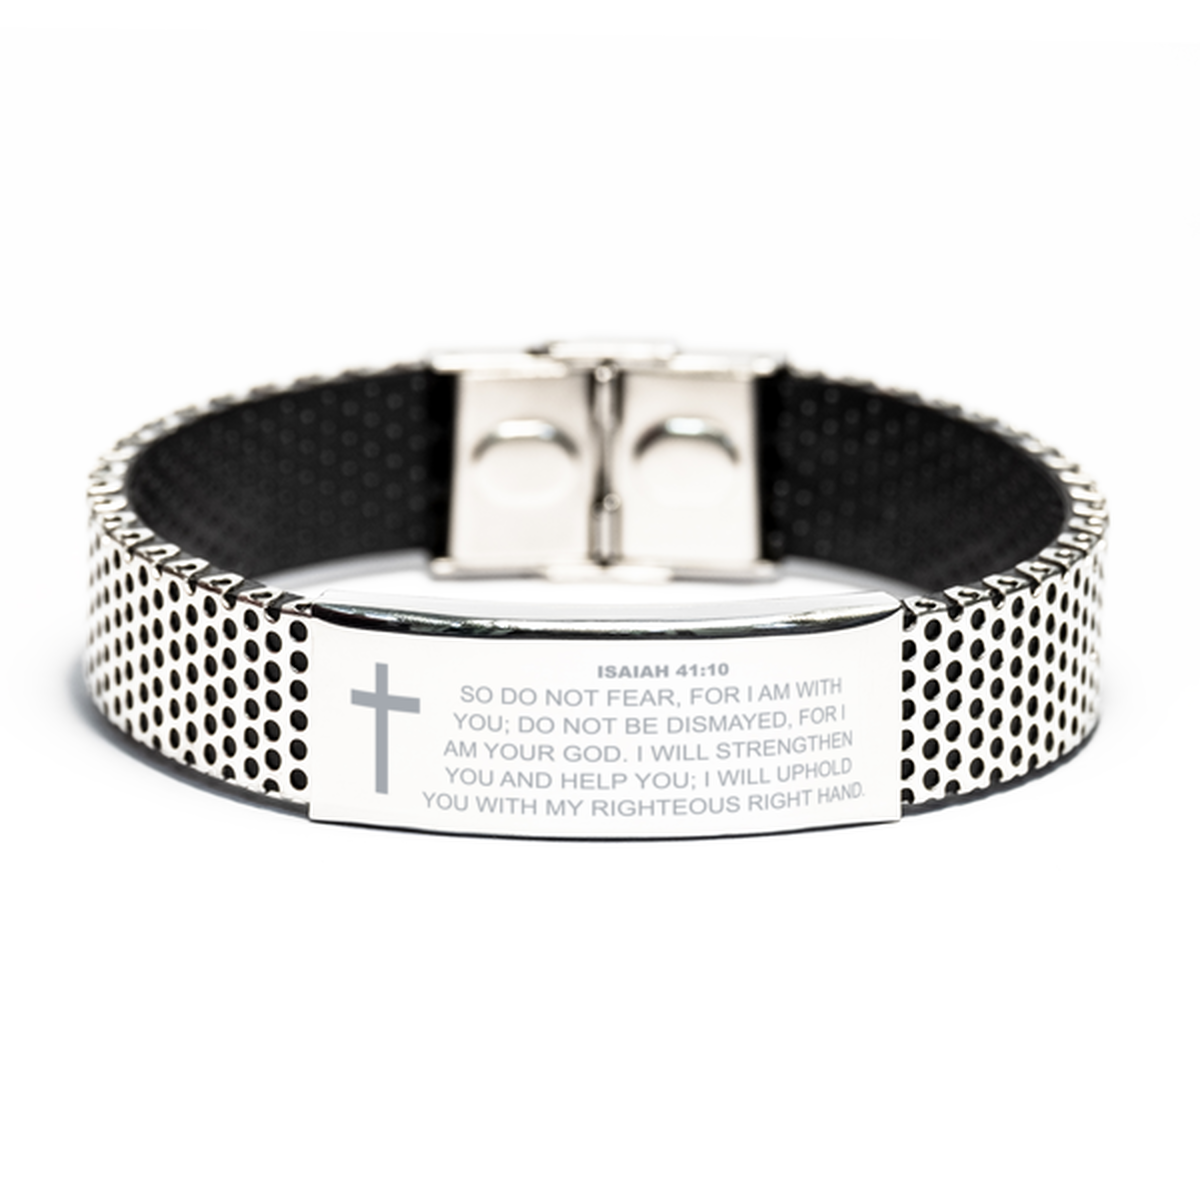 Isaiah 41 10 Bracelet, Bible Verse Bracelet, Christian Bracelet, Christian Birthday Gift, Stainless Steel Bracelet, Gift for Christian.